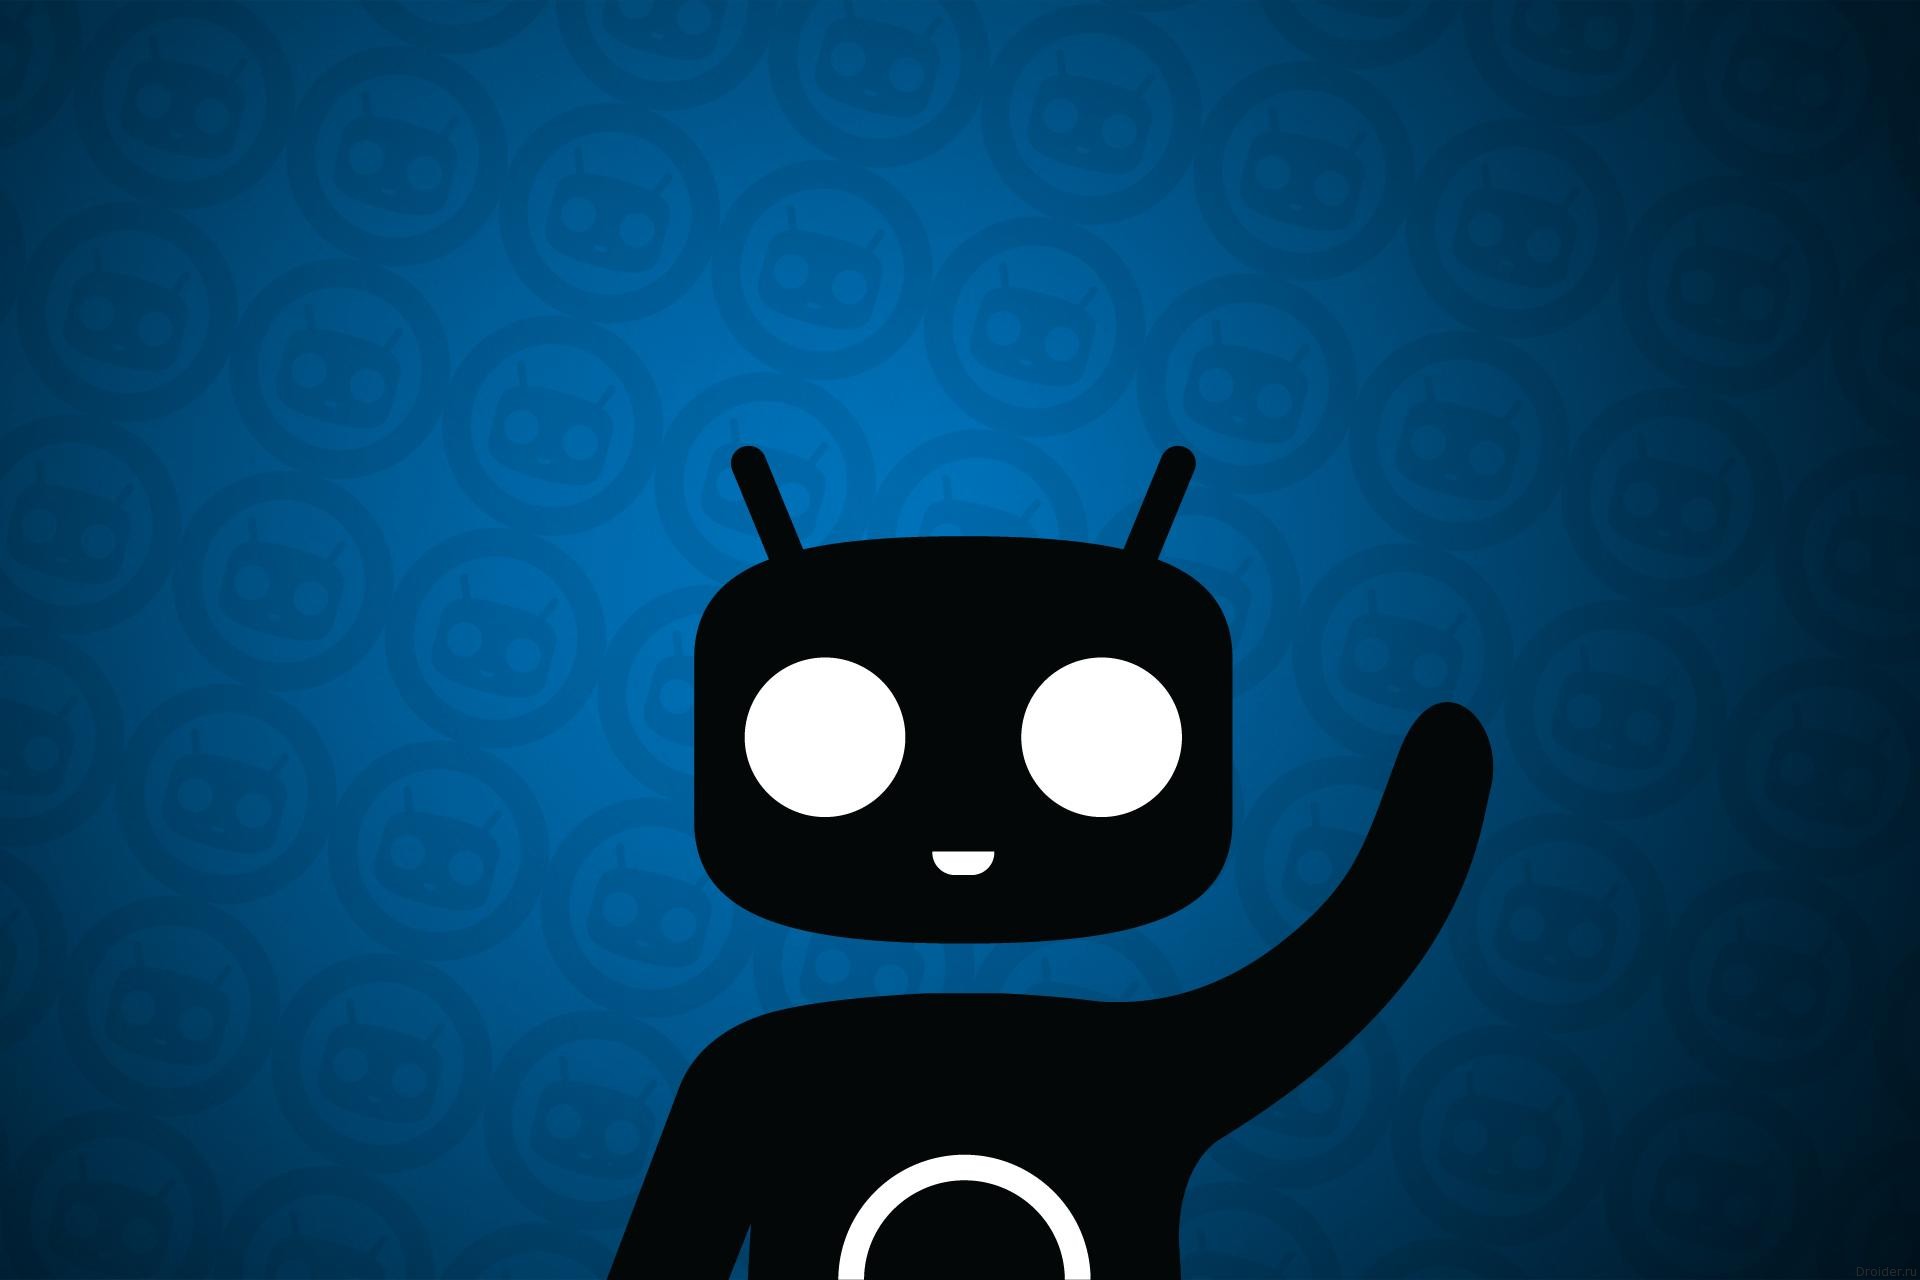 CyanogenMod 12